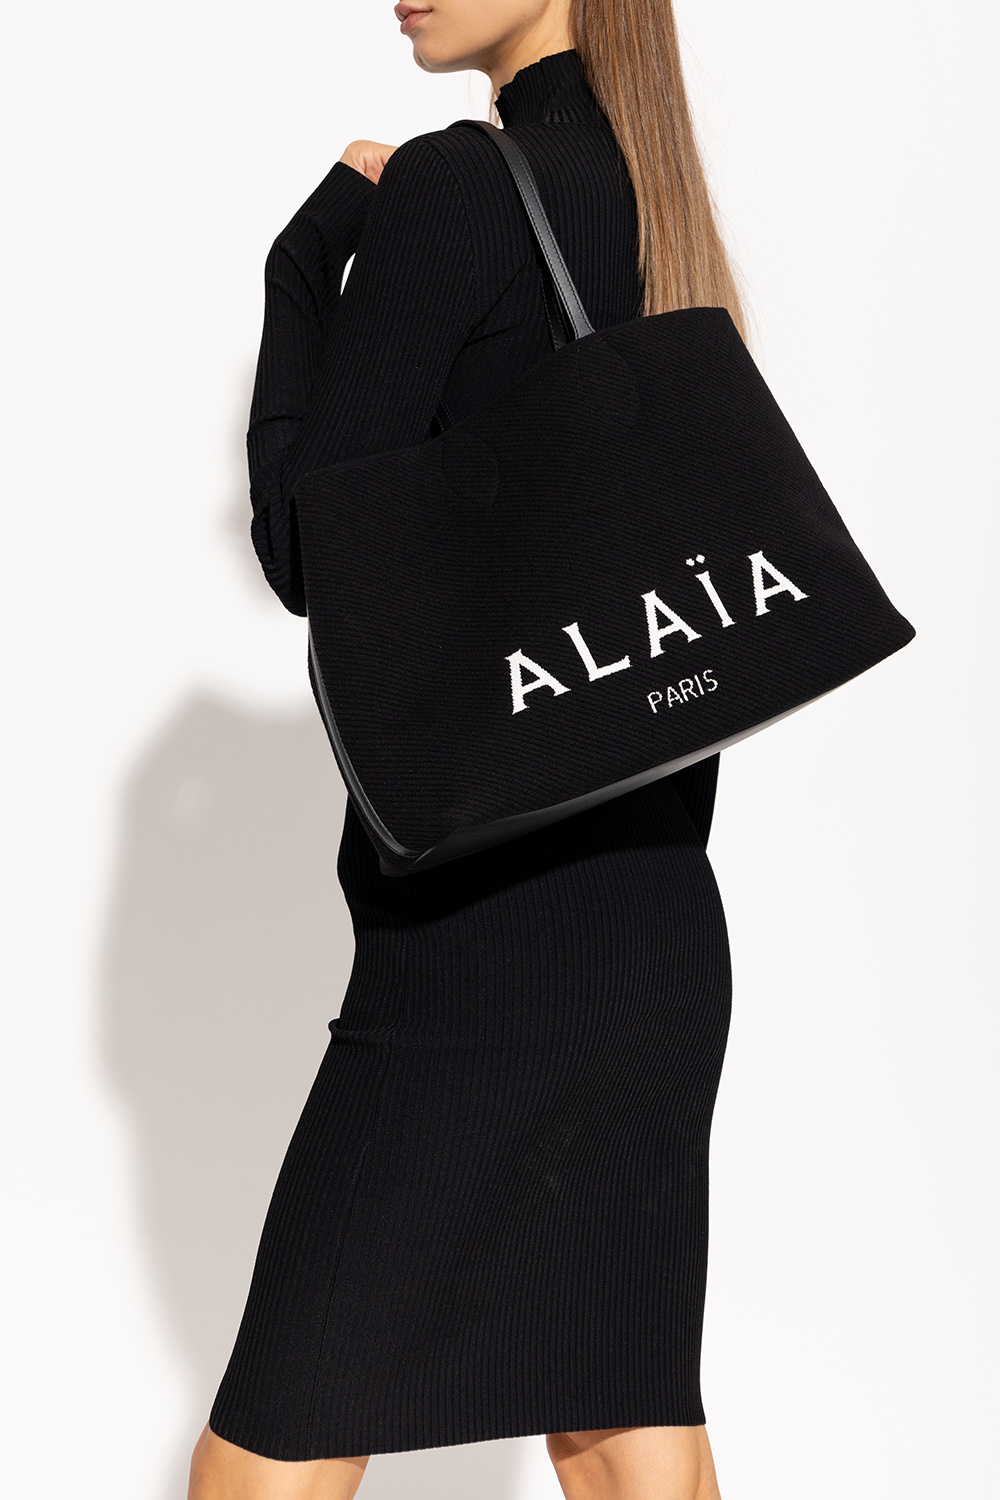 Alaïa Shopper TOTE bag